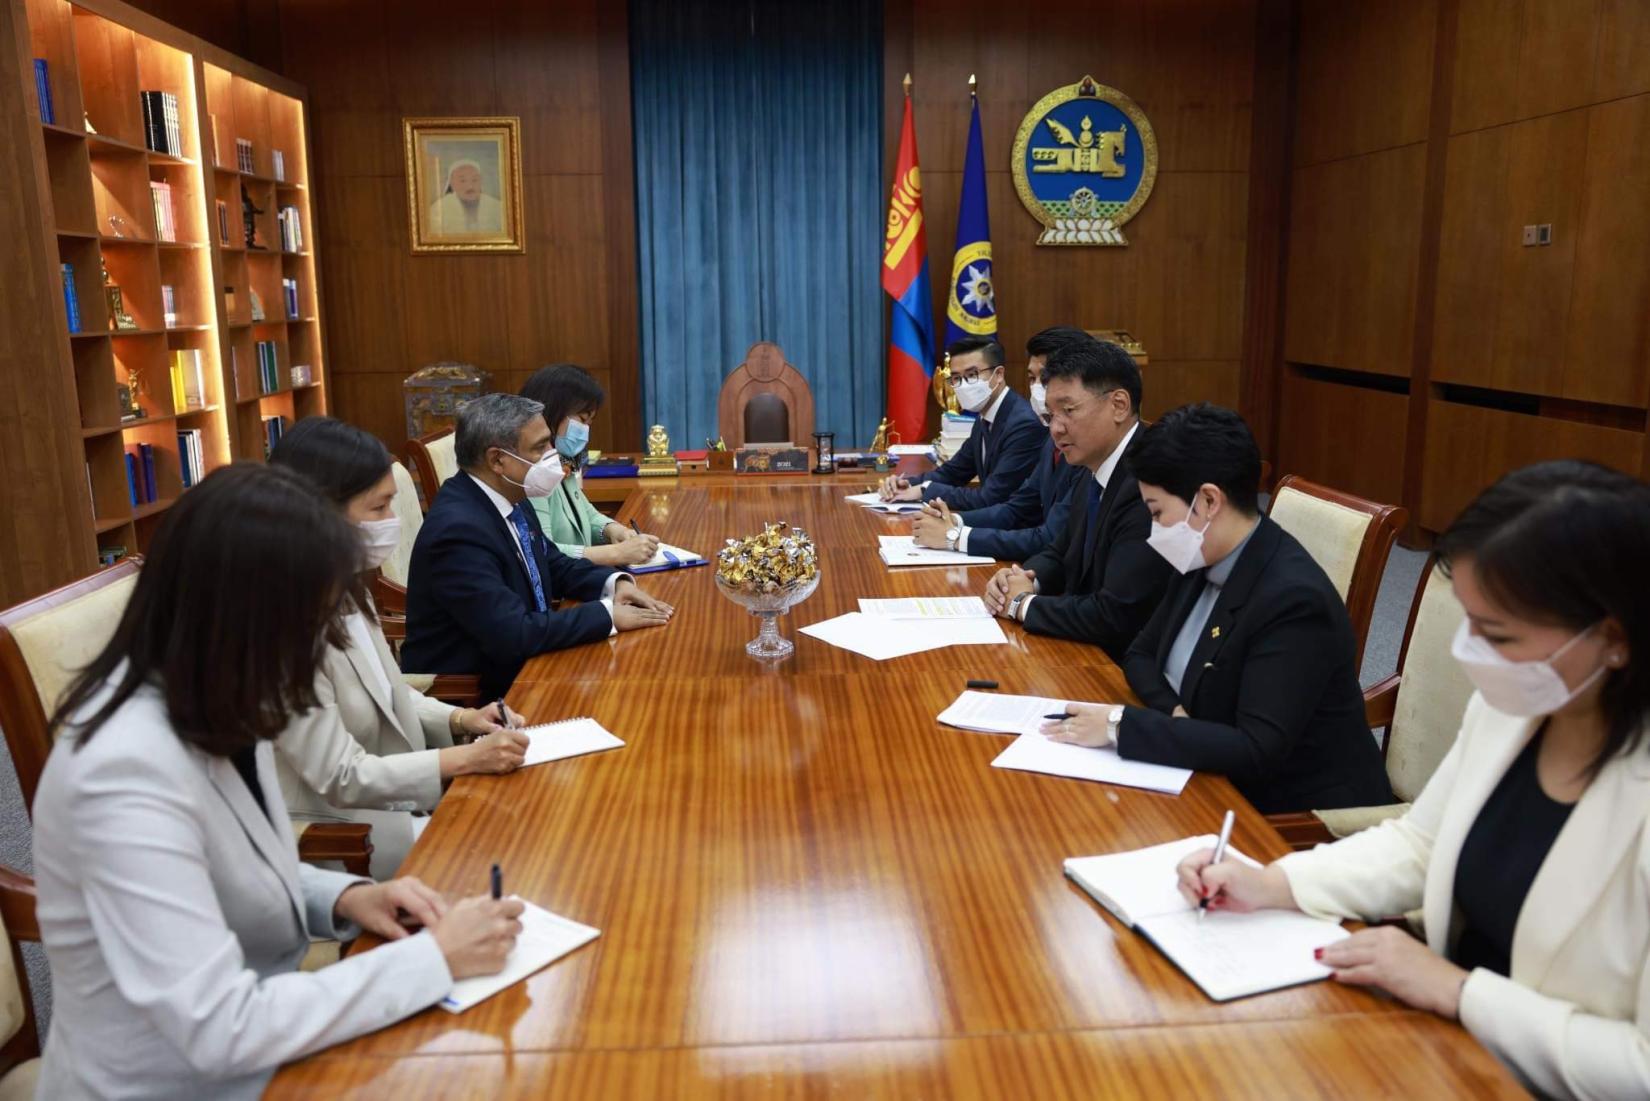 UN Resident Coordinator meets Mongolian President